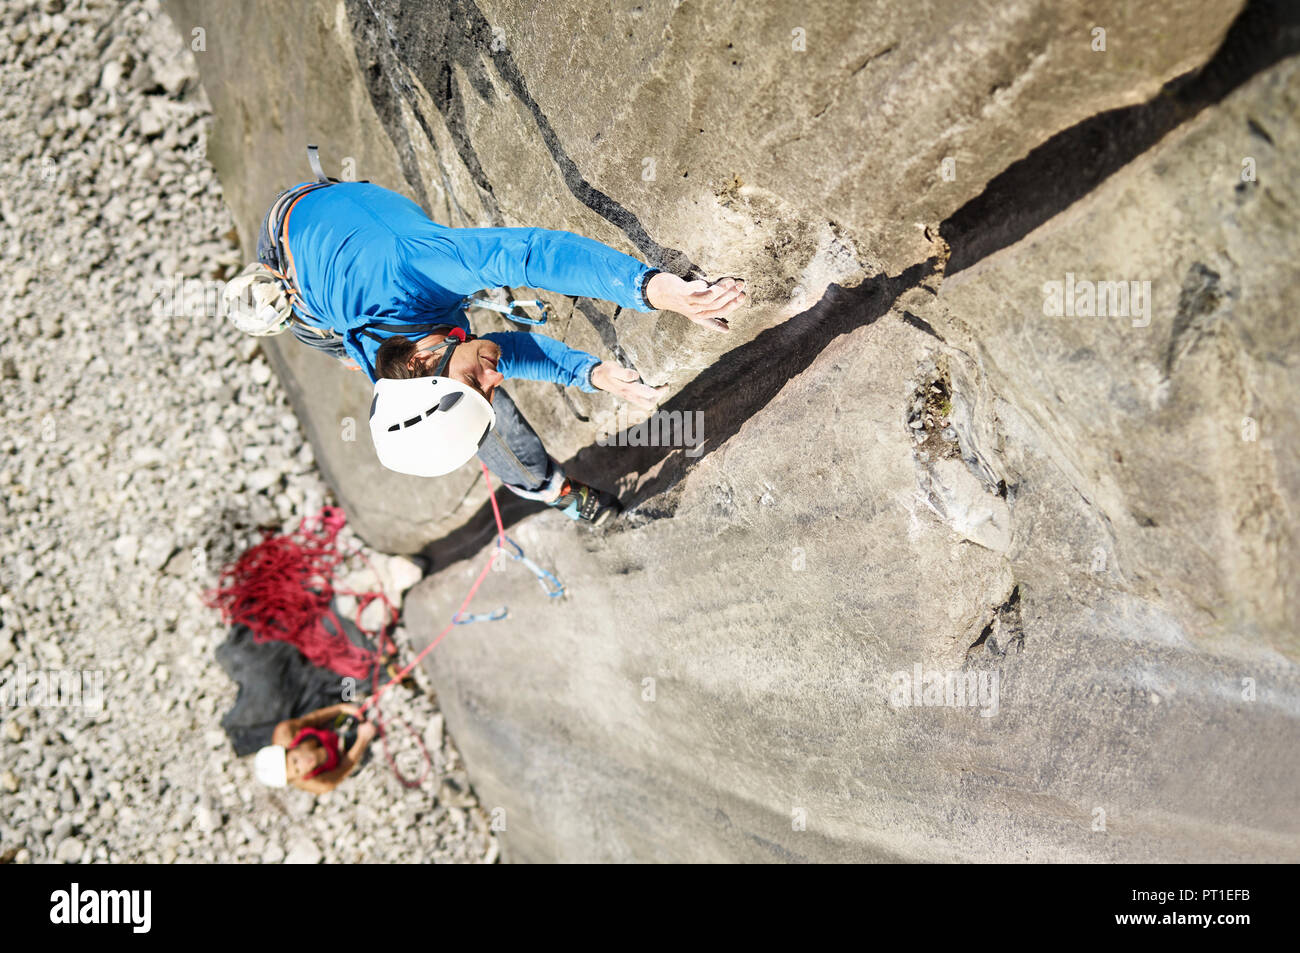 Austria, Innsbruck, Martinswand, man climbing in rock wall Stock Photo